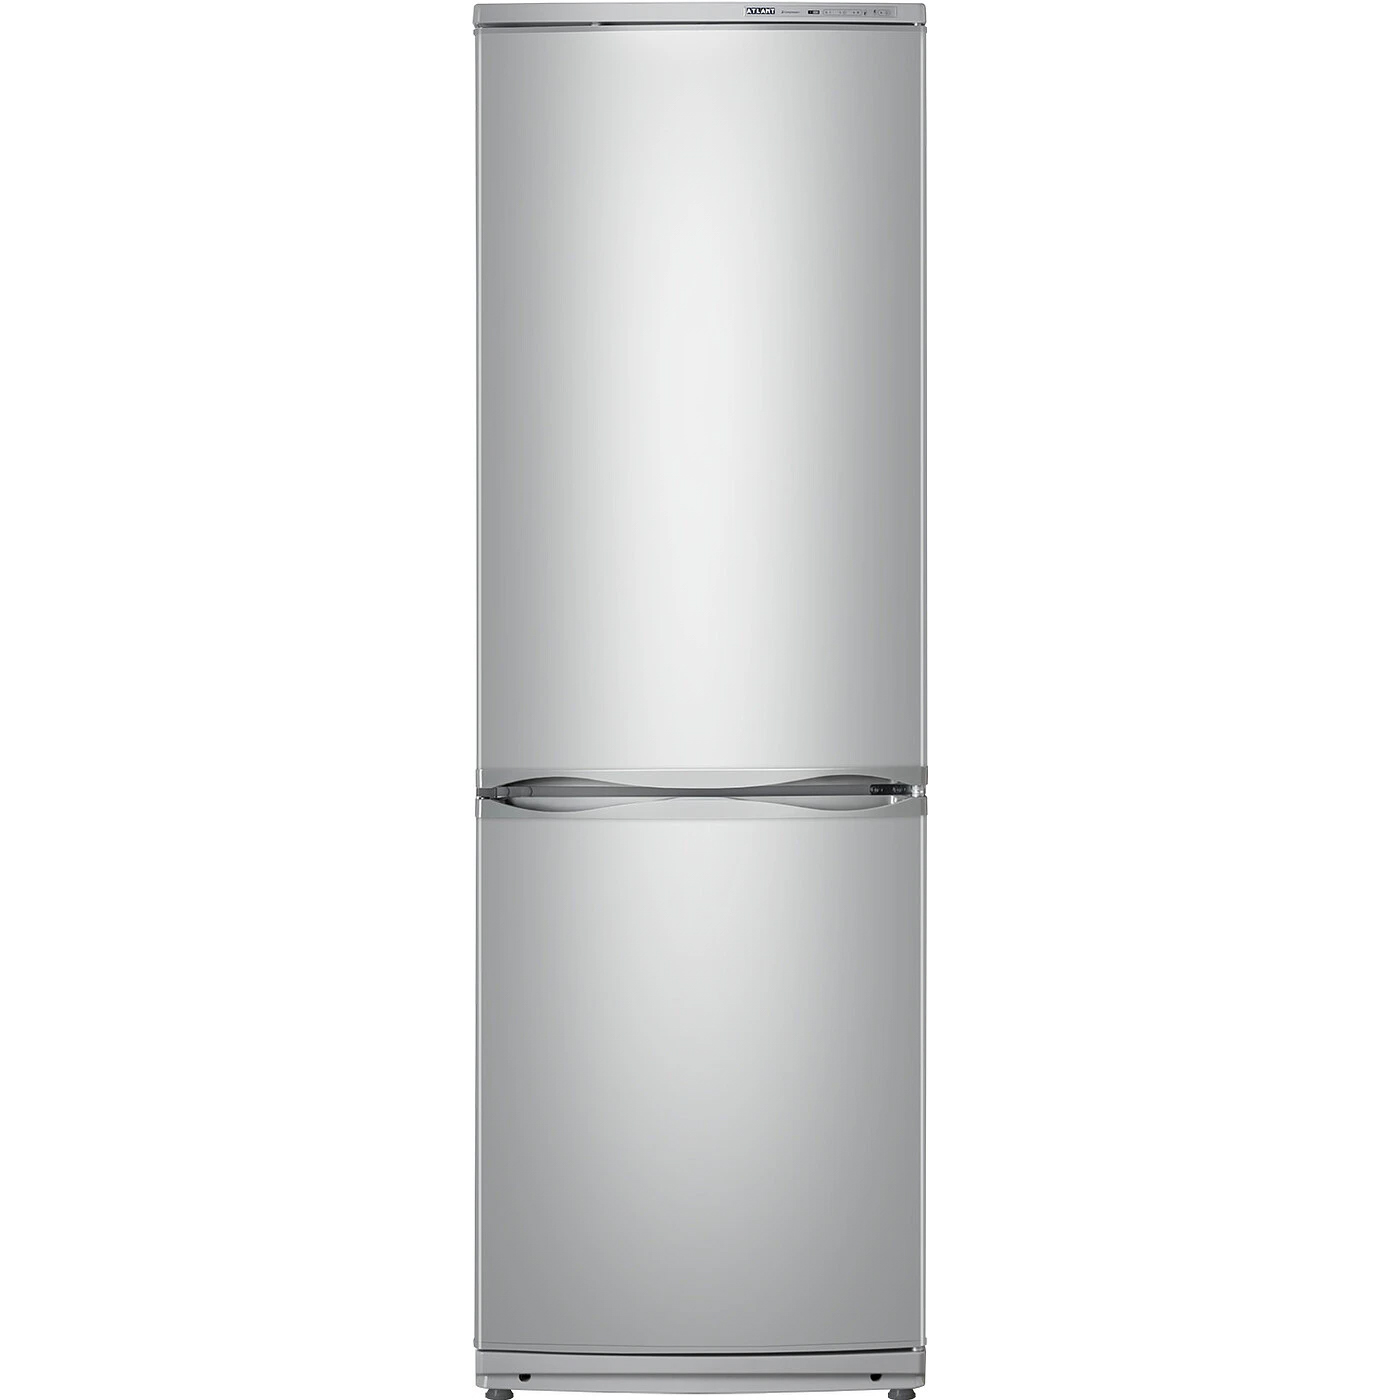 Холодильник ATLANT XM 6021-080 серебристый холодильник atlant xm 6021 080 серебристый